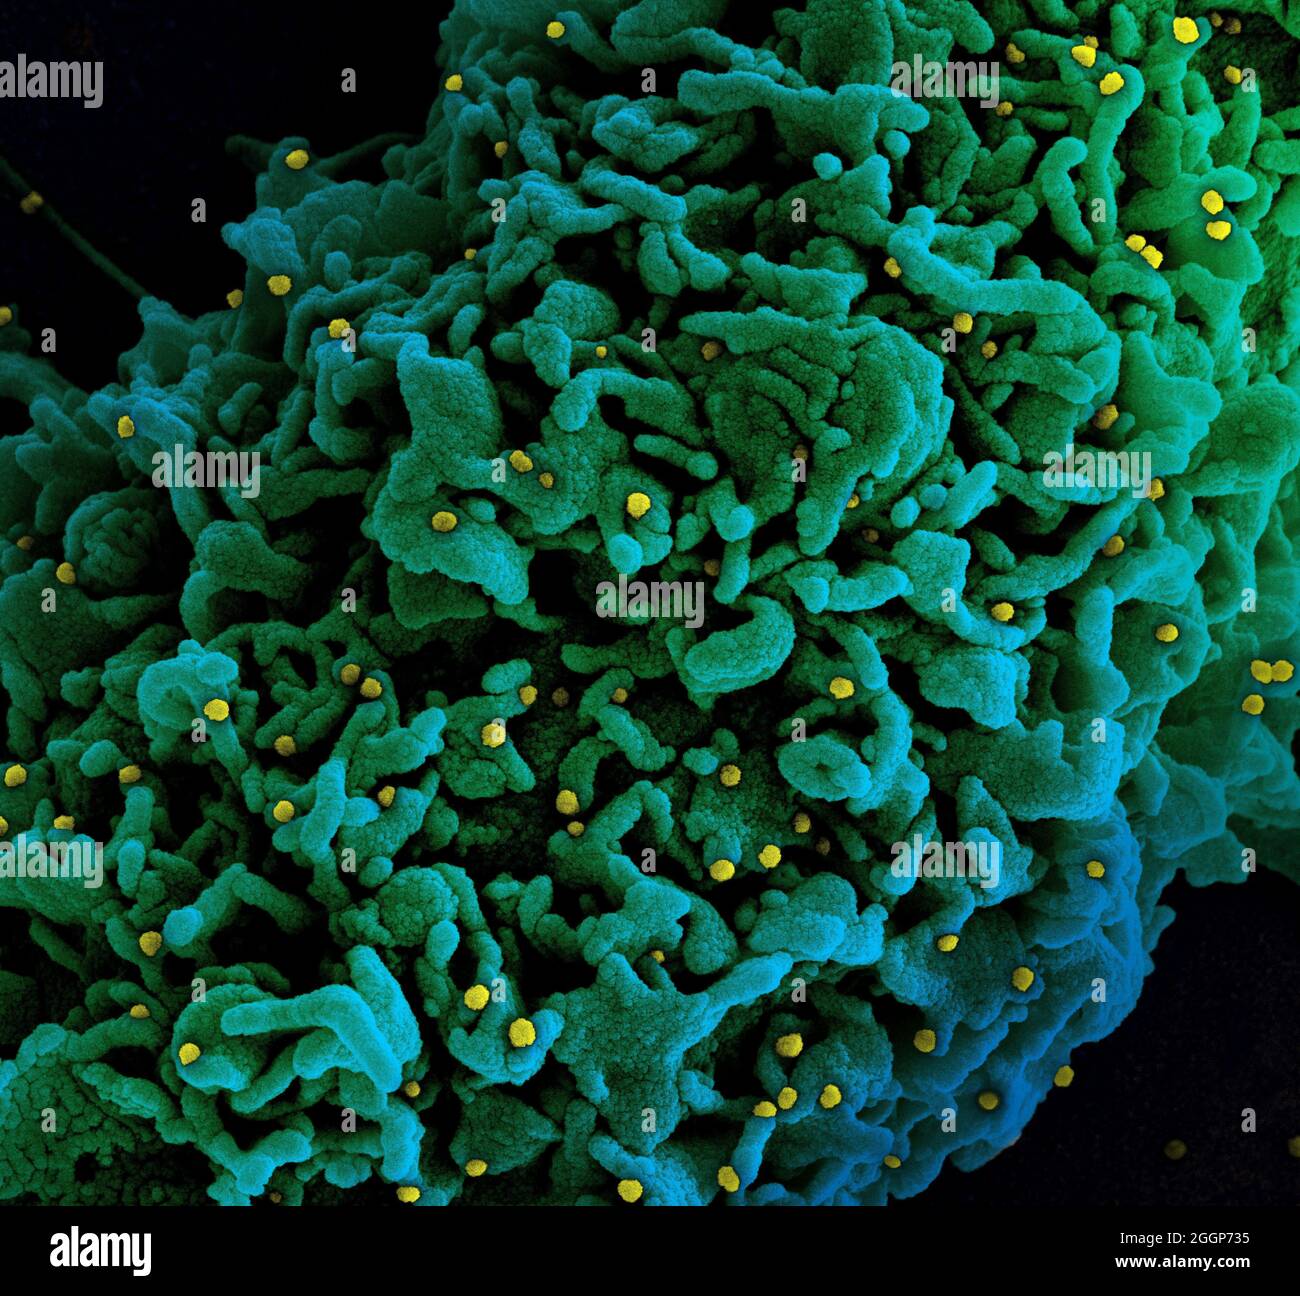 Micrografía electrónica coloreada de una célula (verde) infectada con el Reino Unido B. Foto de stock